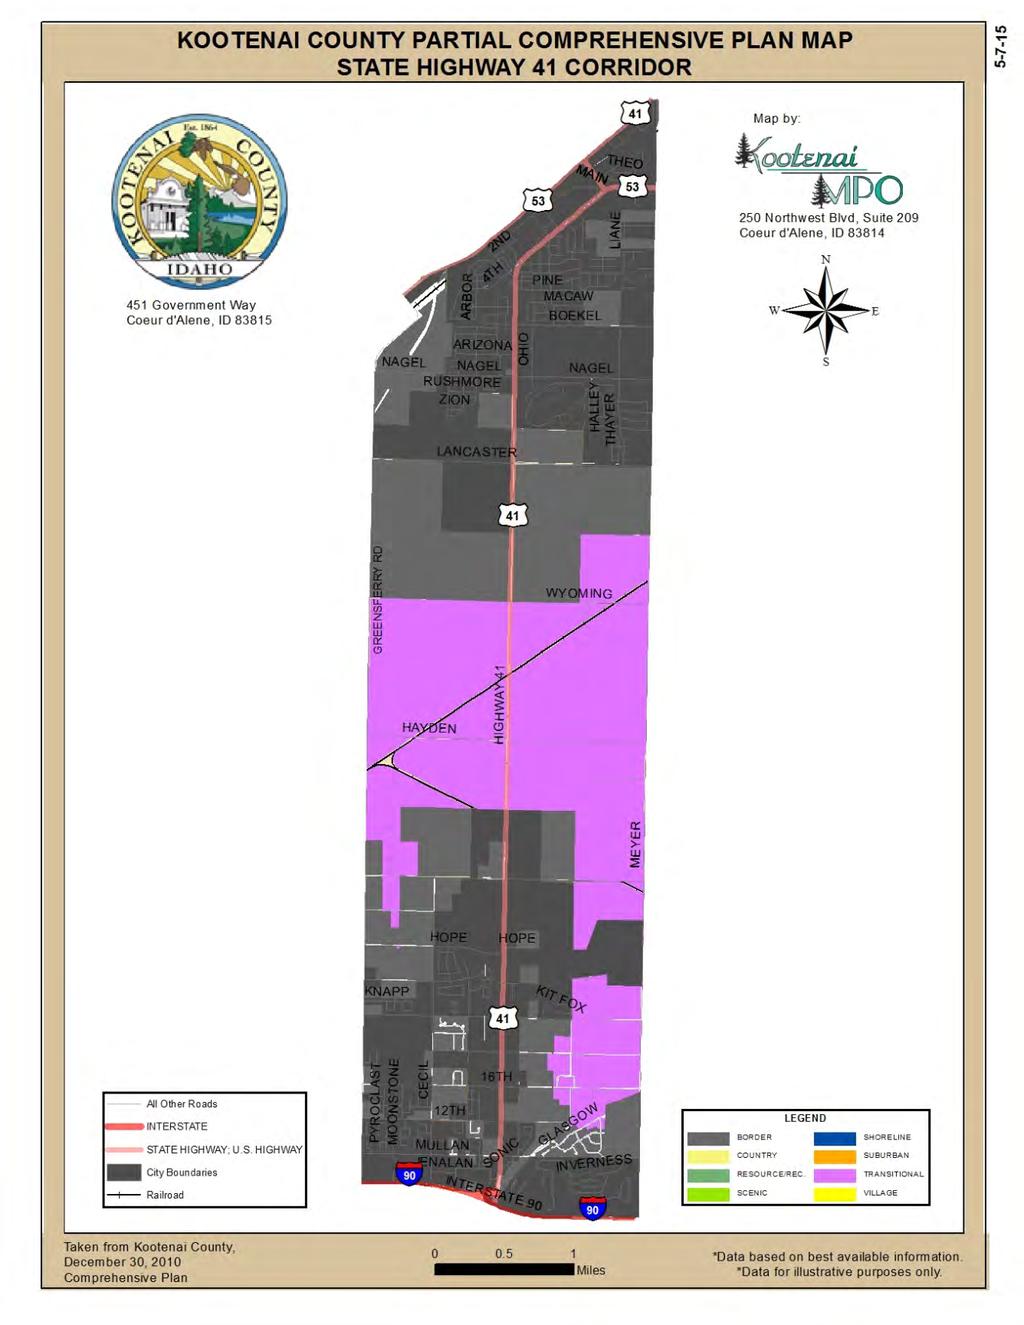 Figure 4 - Kootenai County Partial Comprehensive Plan Kootenai